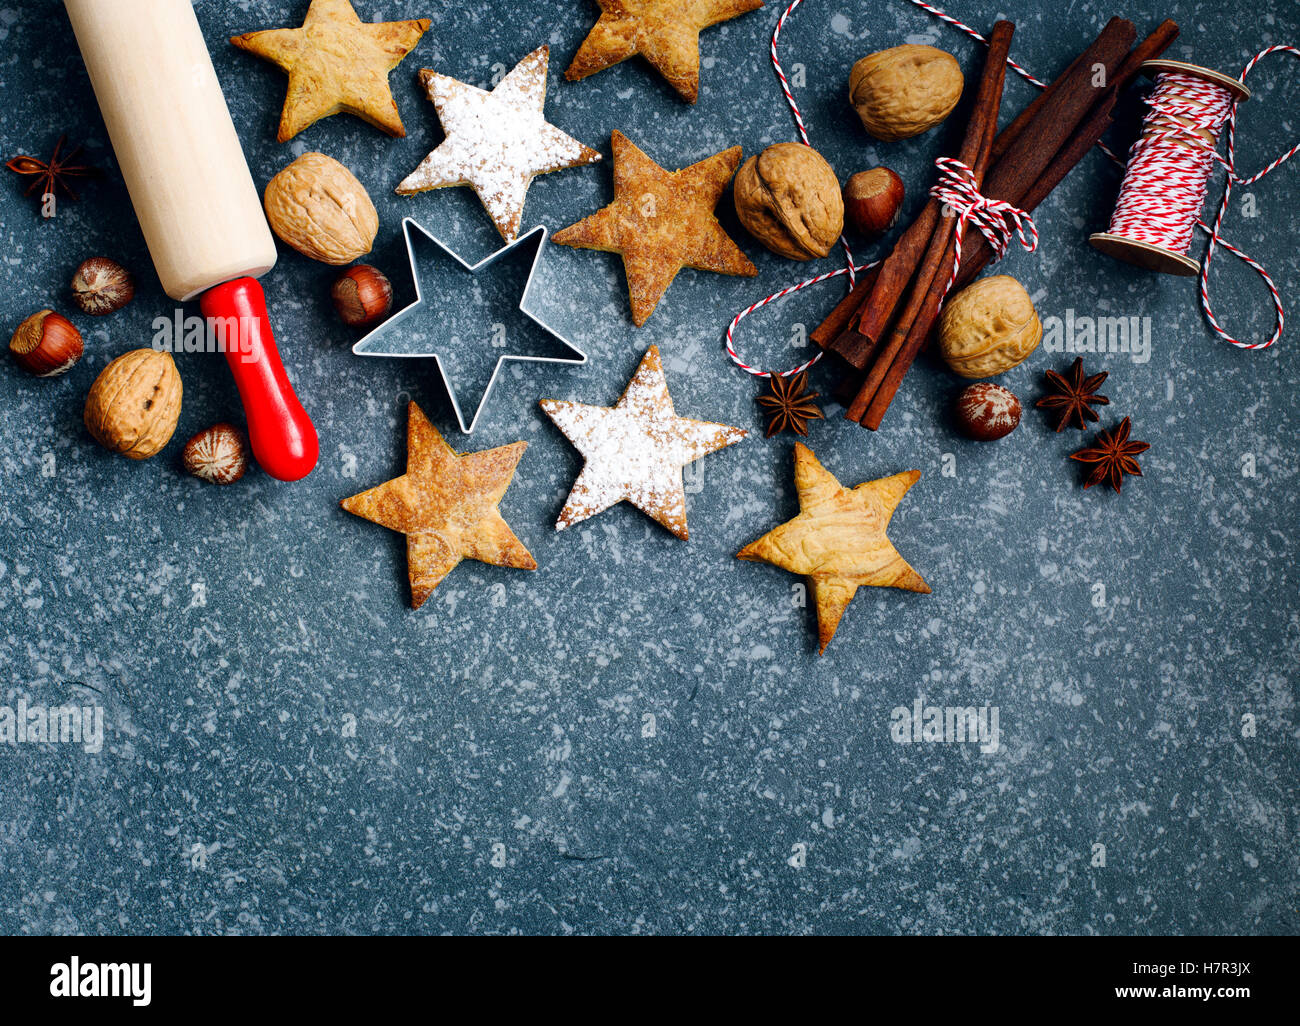 Les biscuits de Noël, broche du rouleau, cinnmoa, écrous et emporte-pièce sur fond sombre with copy space Banque D'Images